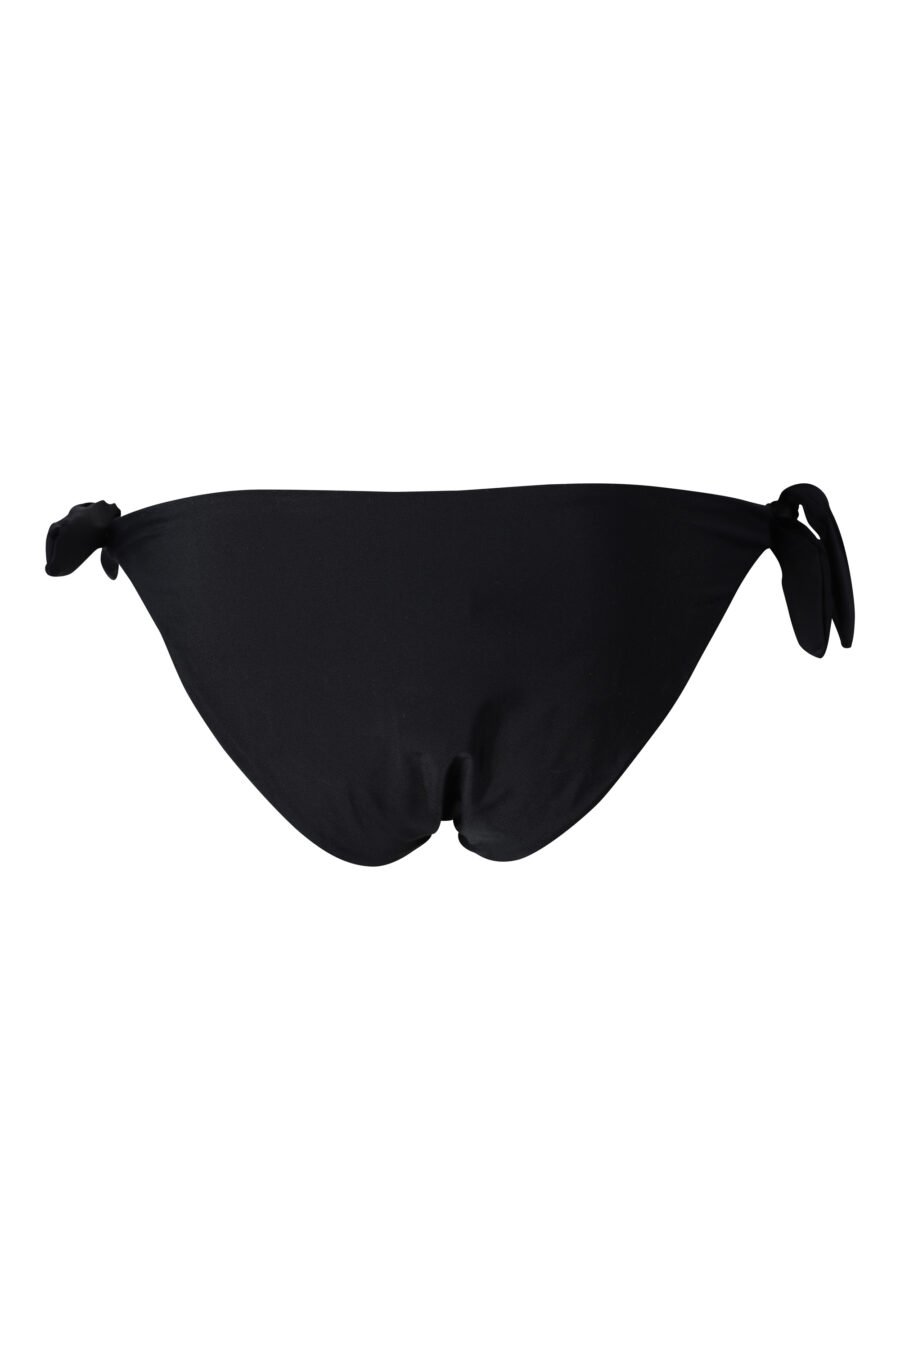 Schwarze Bikinihose mit Maxibikinioberteil mit Tiermotiv und seitlicher Bindung - IMG 2312